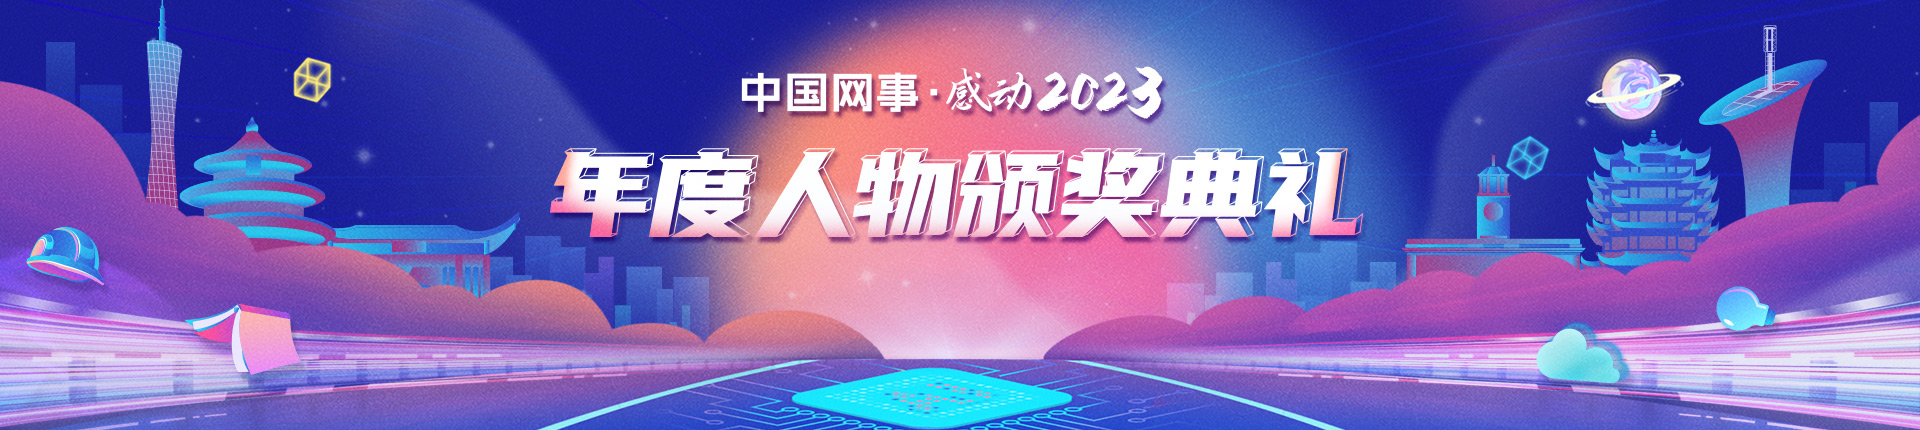 “中国网事·感动2023”十大年度网络人物揭晓